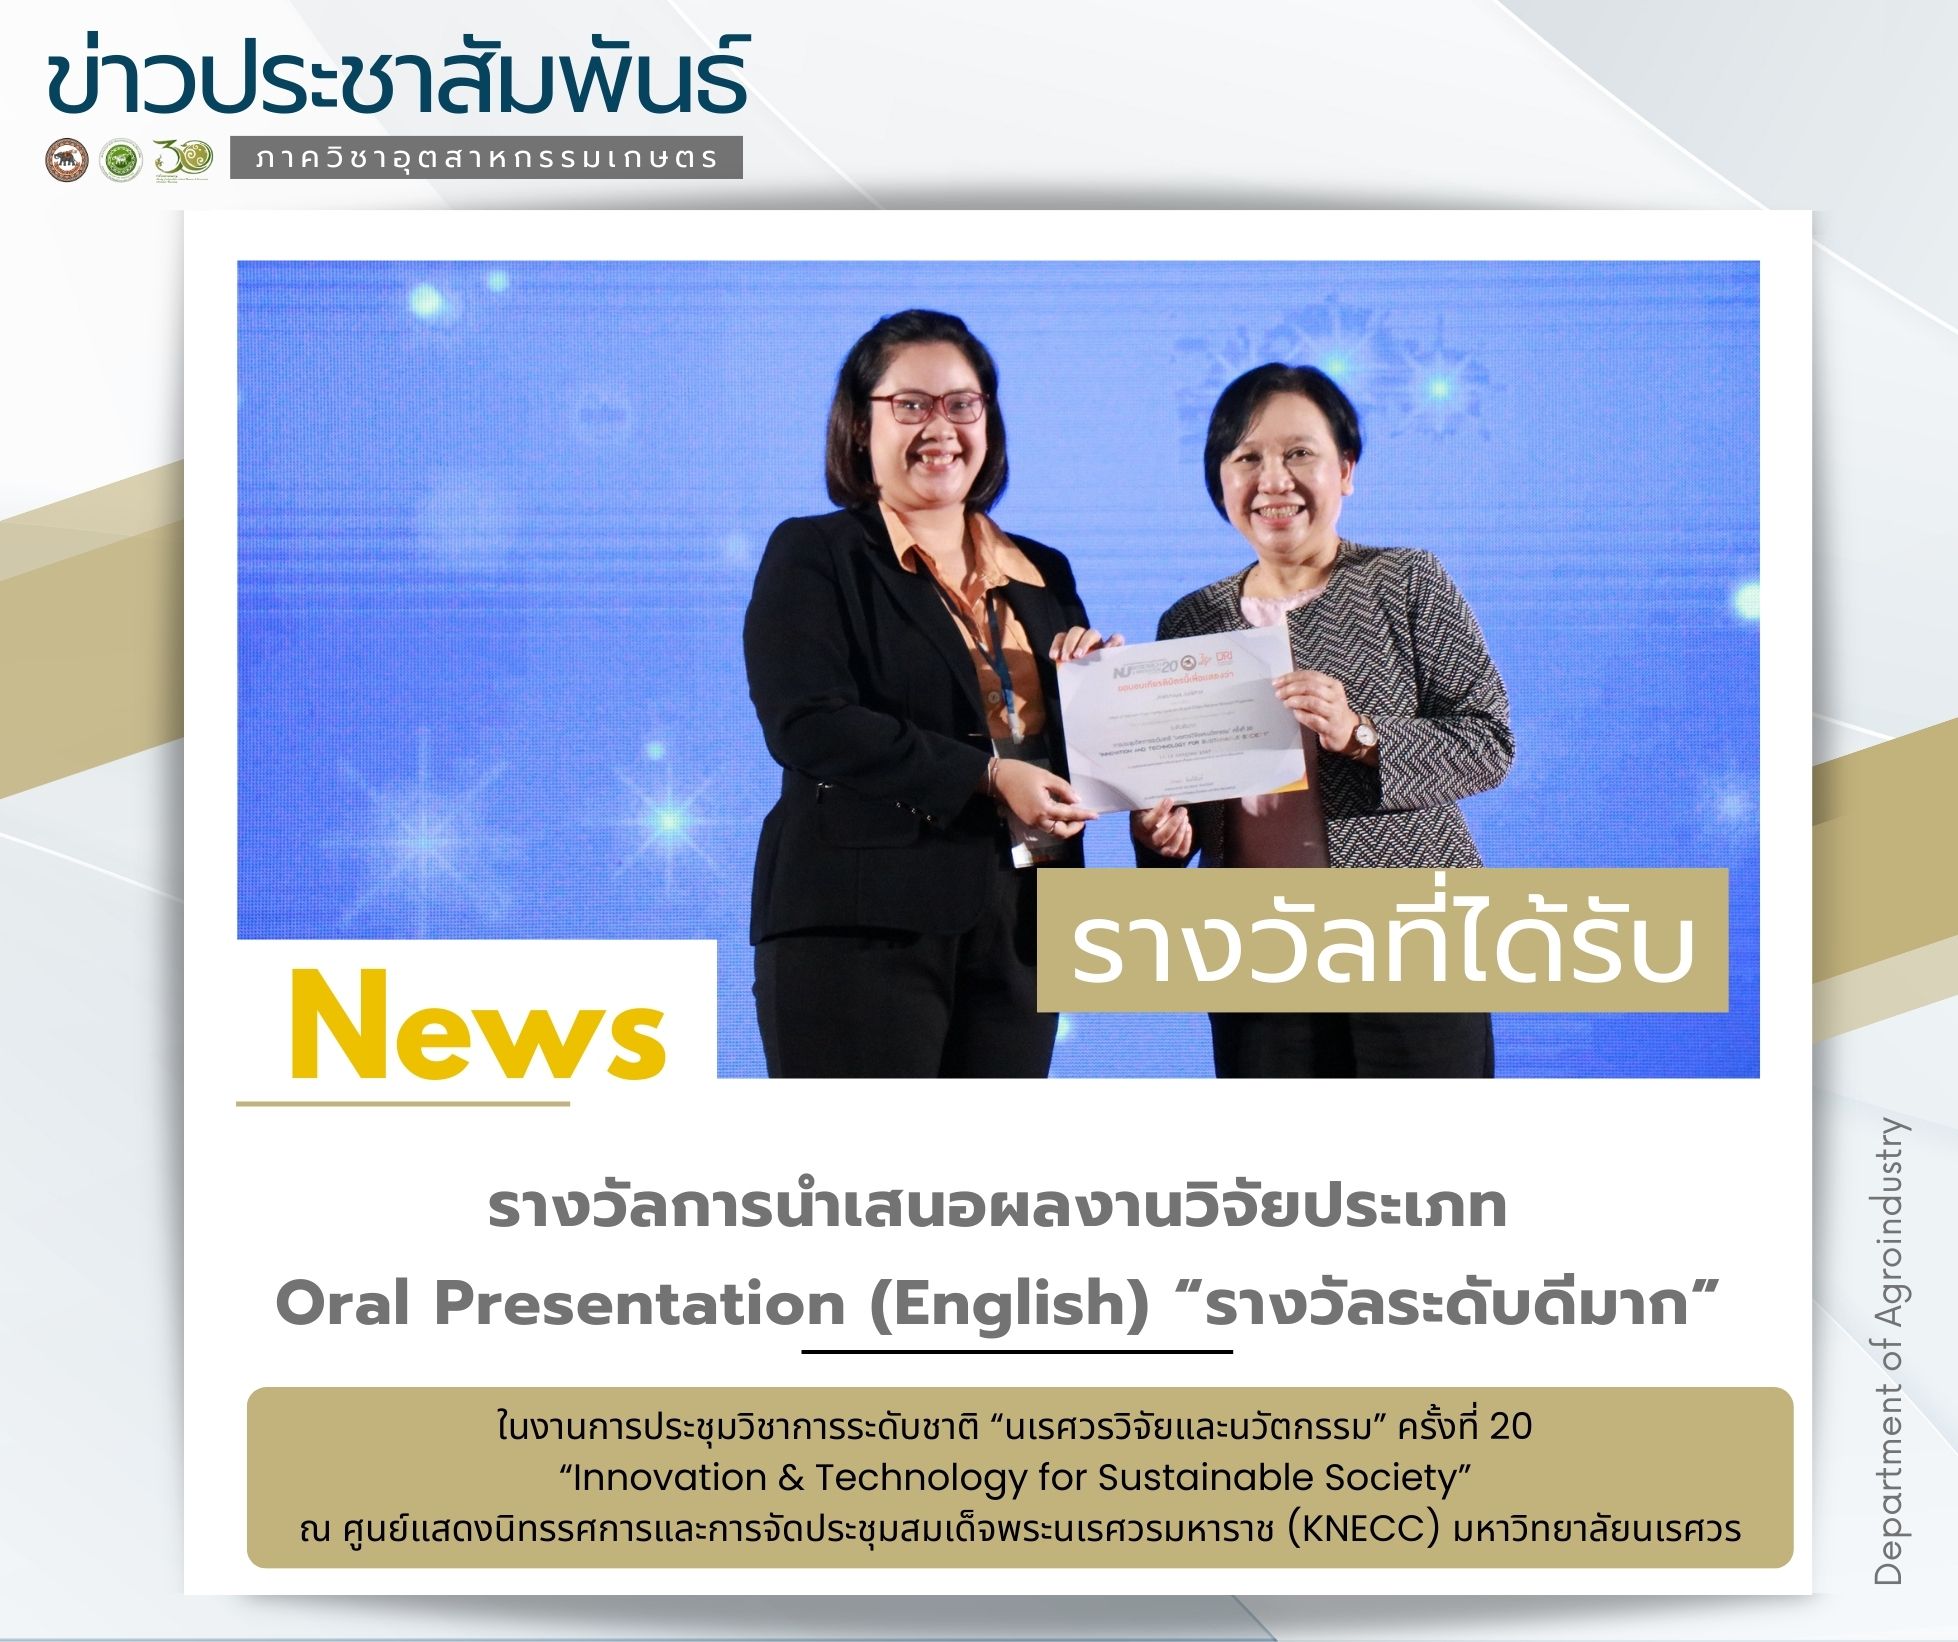 ขอแสดงความยินดีกับนิสิตระดับปริญญาเอก สาขาวิชาวิทยาศาสตร์และเทคโนโลยีการอาหาร ได้รับรางวัล Oral Presentation (English) “รางวัลระดับดีมาก”